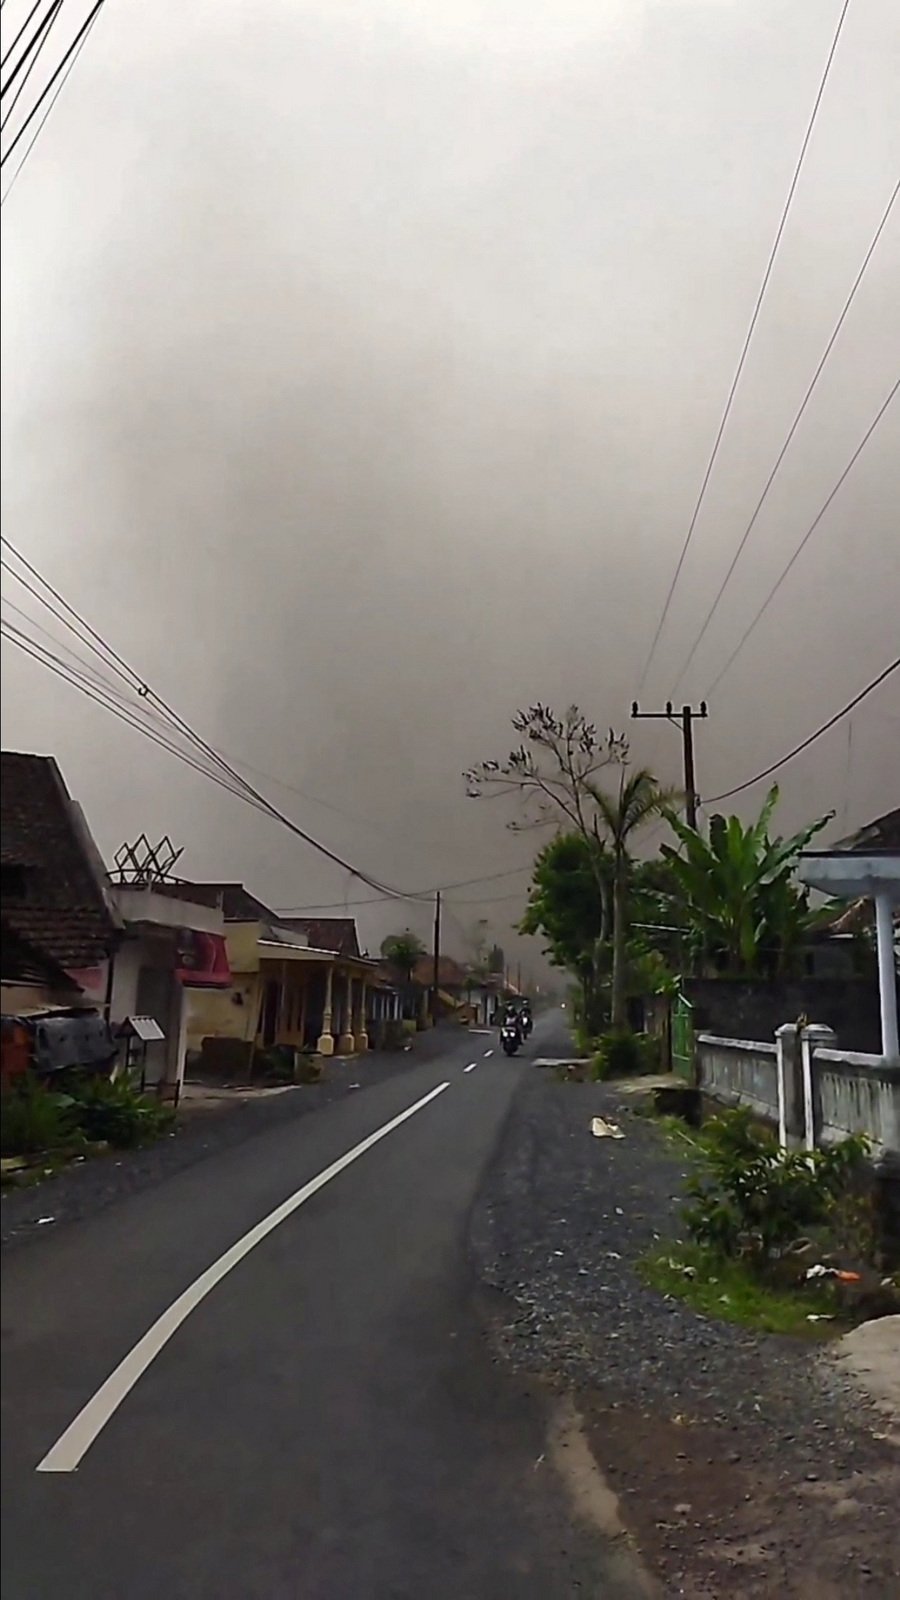 Výbuch sopky Semeru na indonéském ostrově Jáva